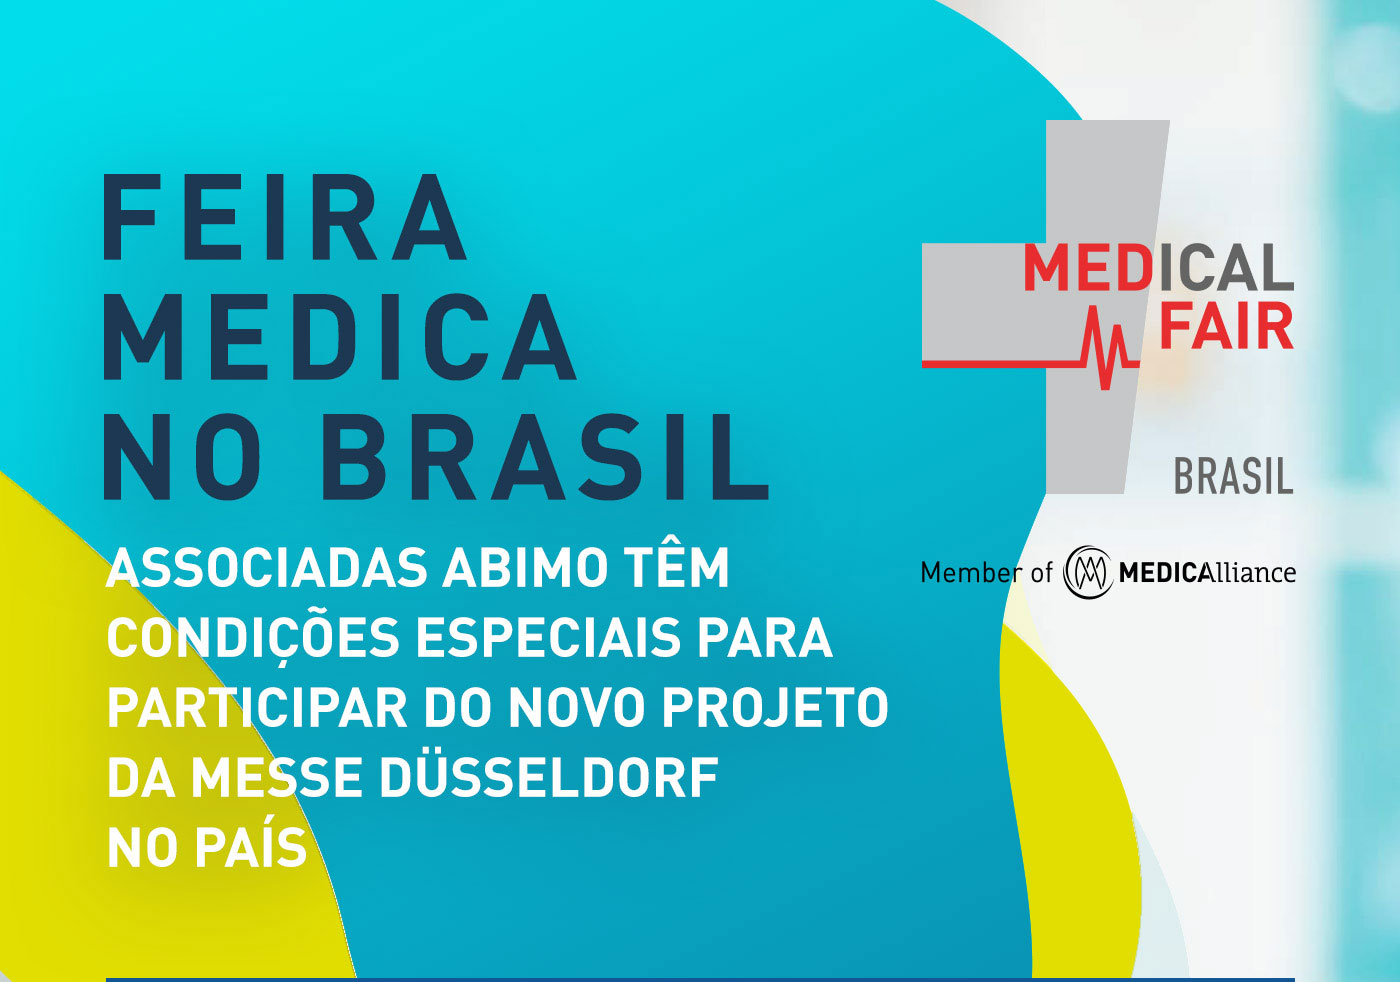 Feira MEDICA no Brasil